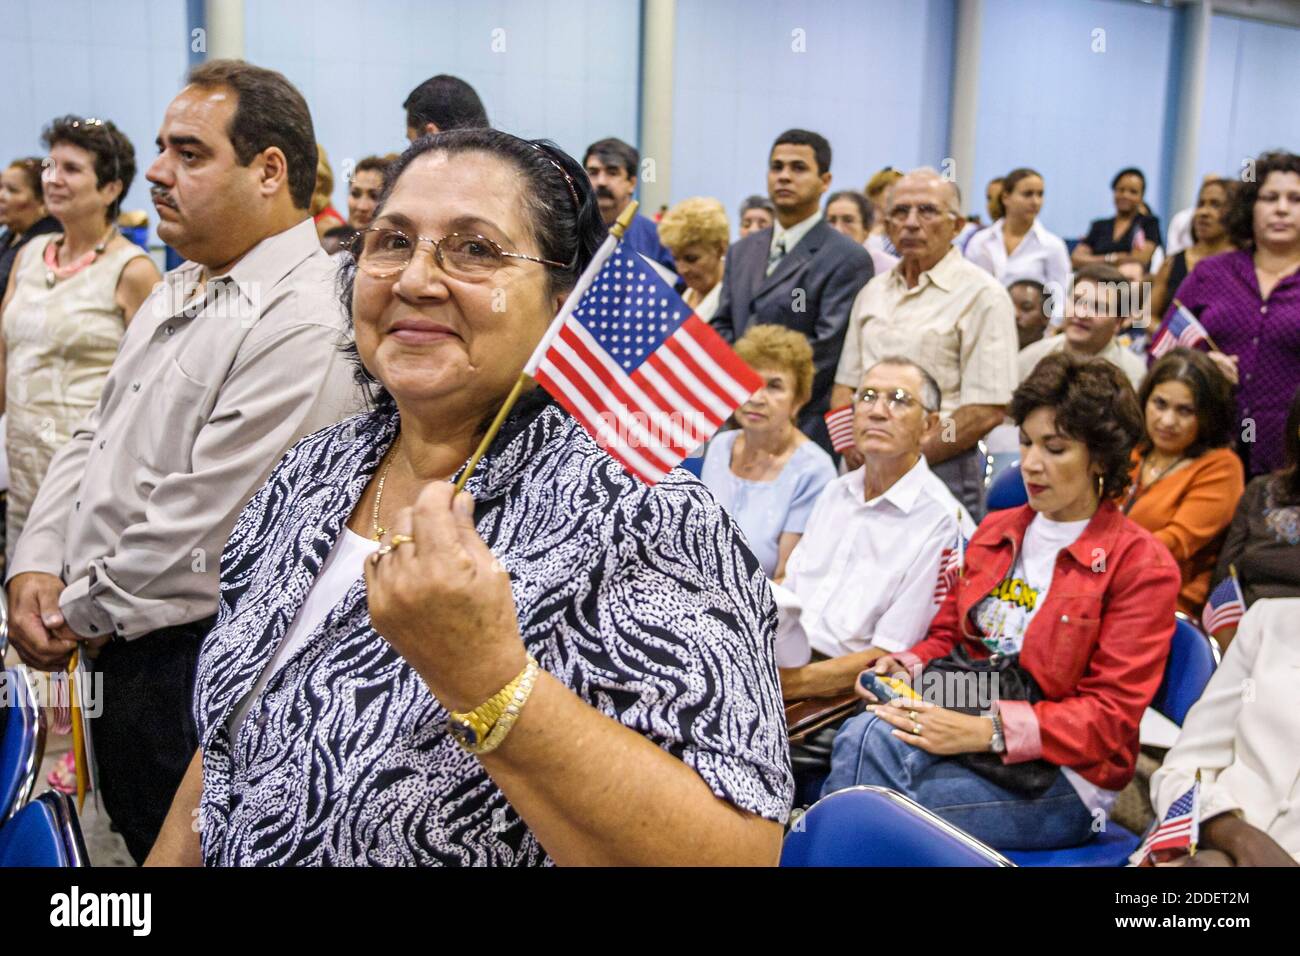 Florida, Miami Beach Convention Center, centro, cerimonia di naturalizzazione giuramento di cittadinanza promessa Allegiance, immigrati immigrati in possesso di piccola miniatur Foto Stock